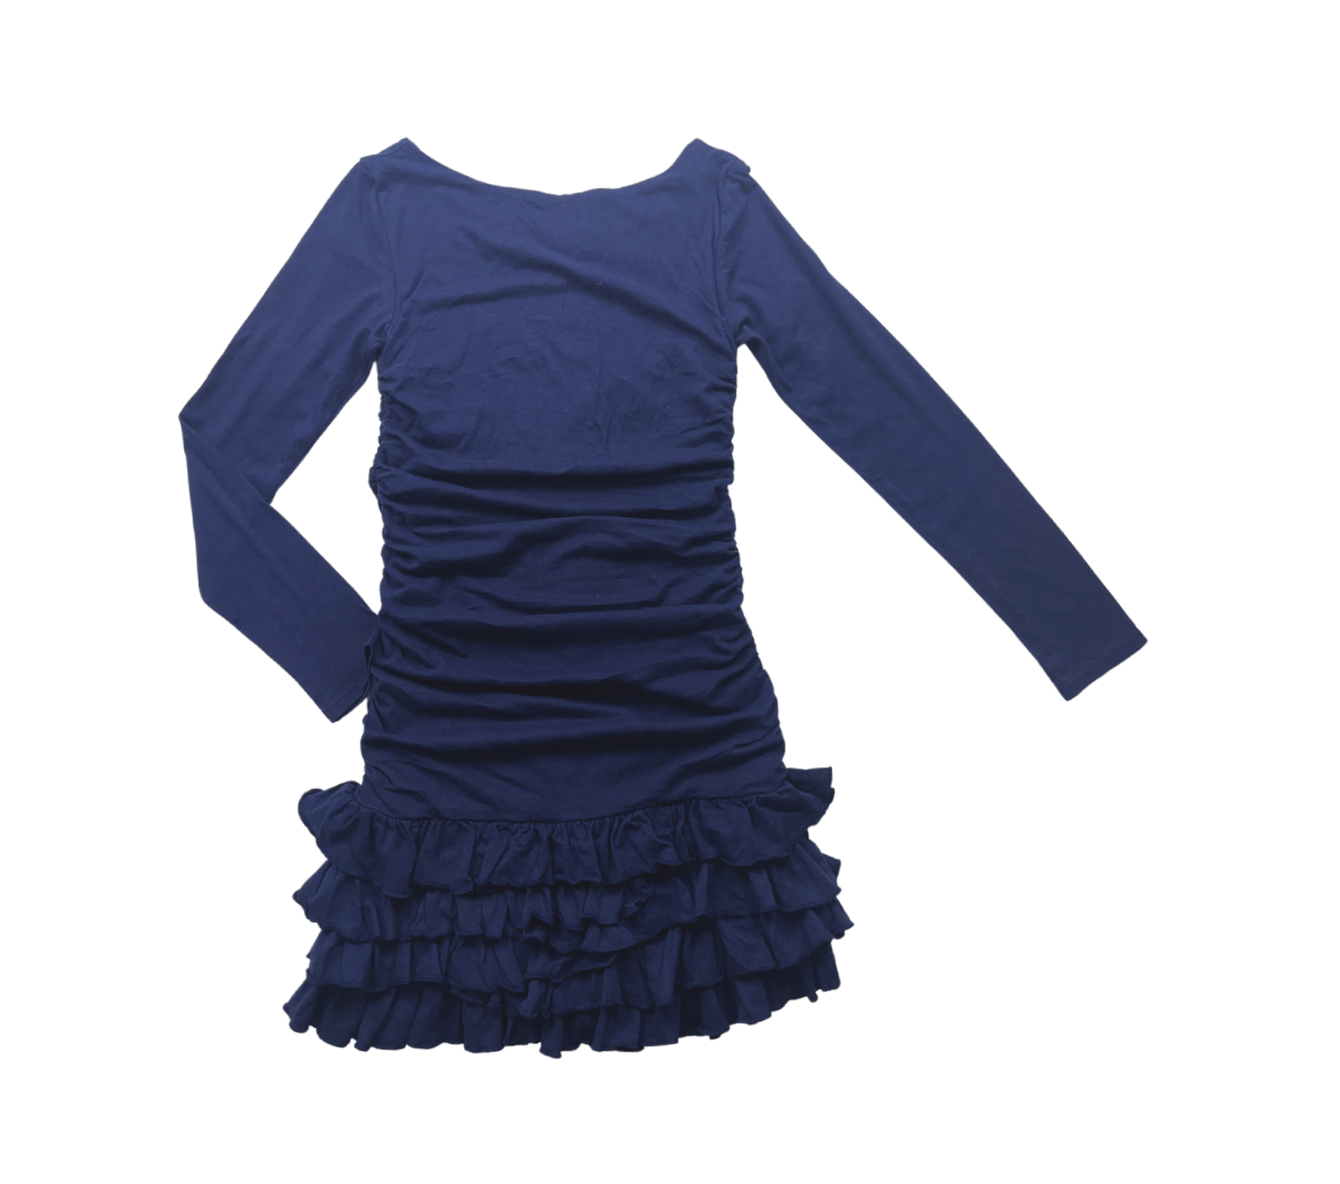 RALPH LAUREN - Robe bleu marine plissée manches longues - 8/10 ans